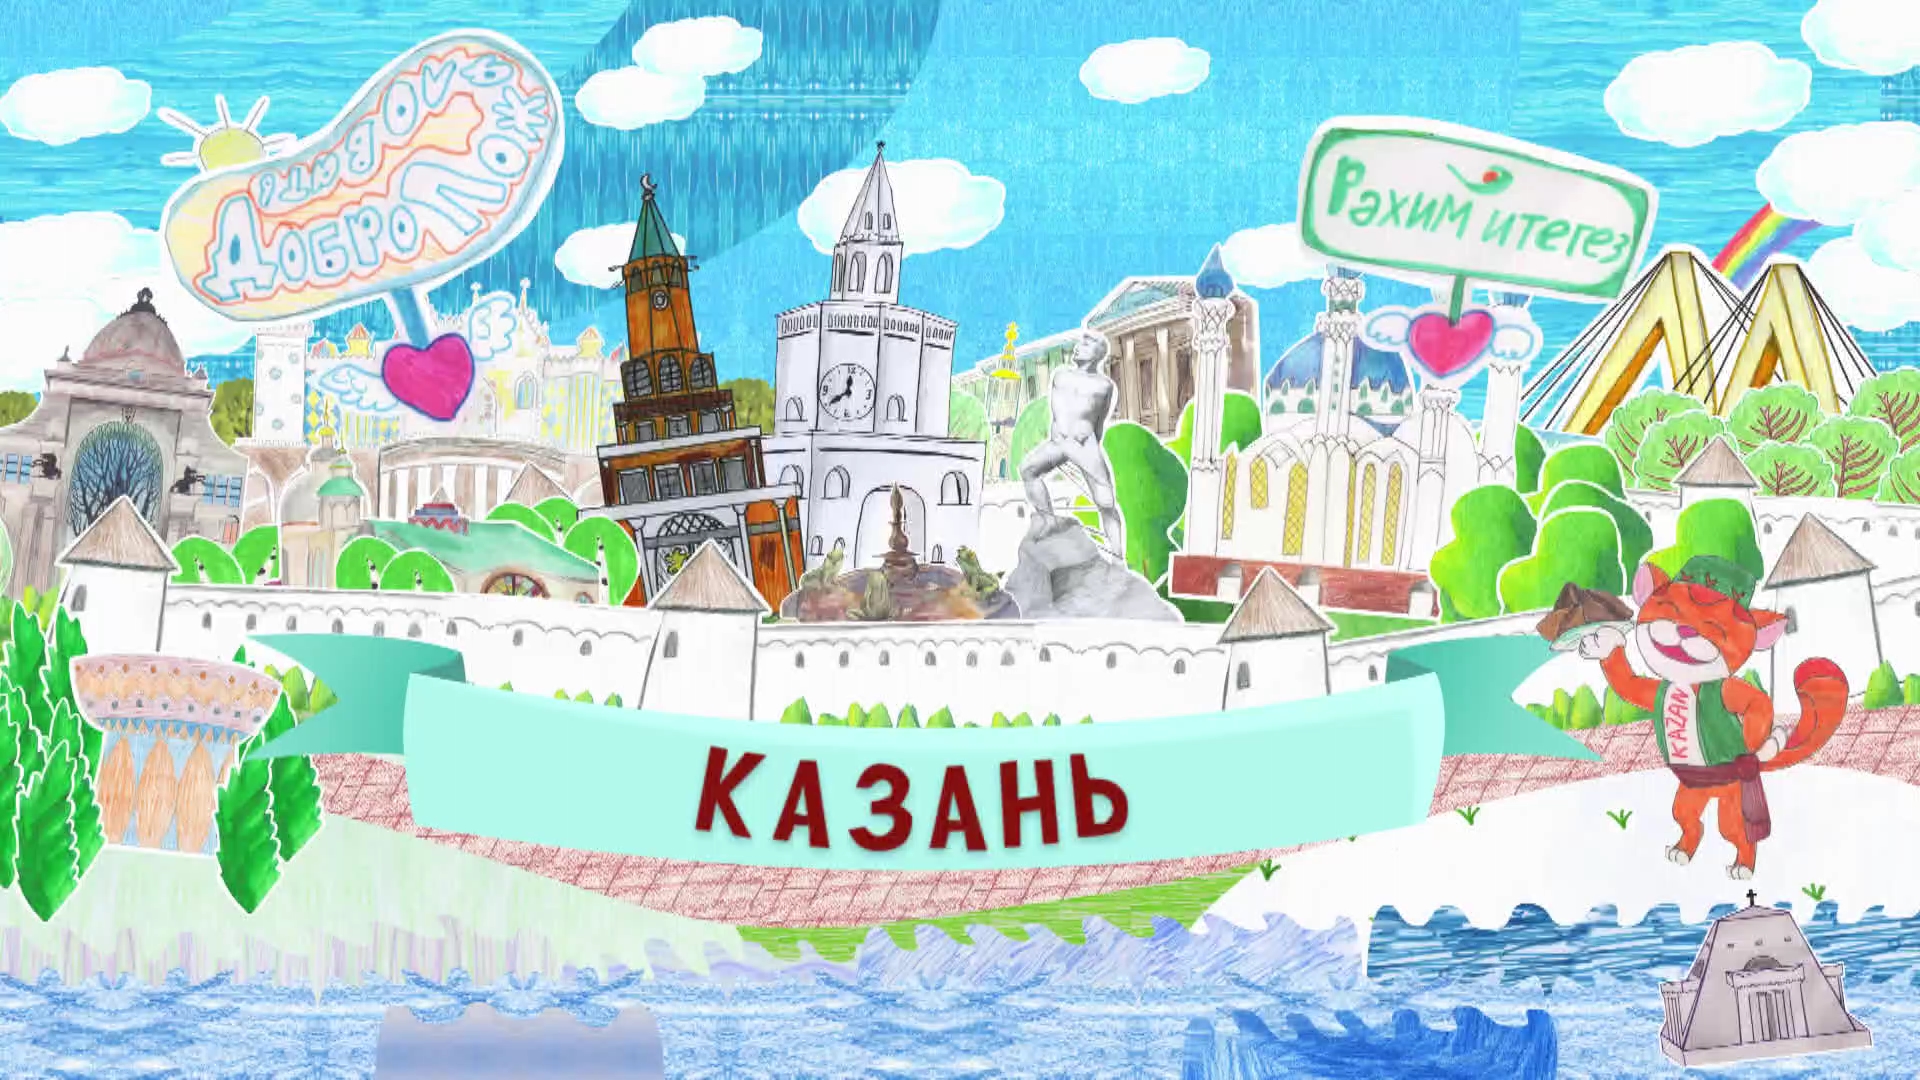 Казань картинки для детей